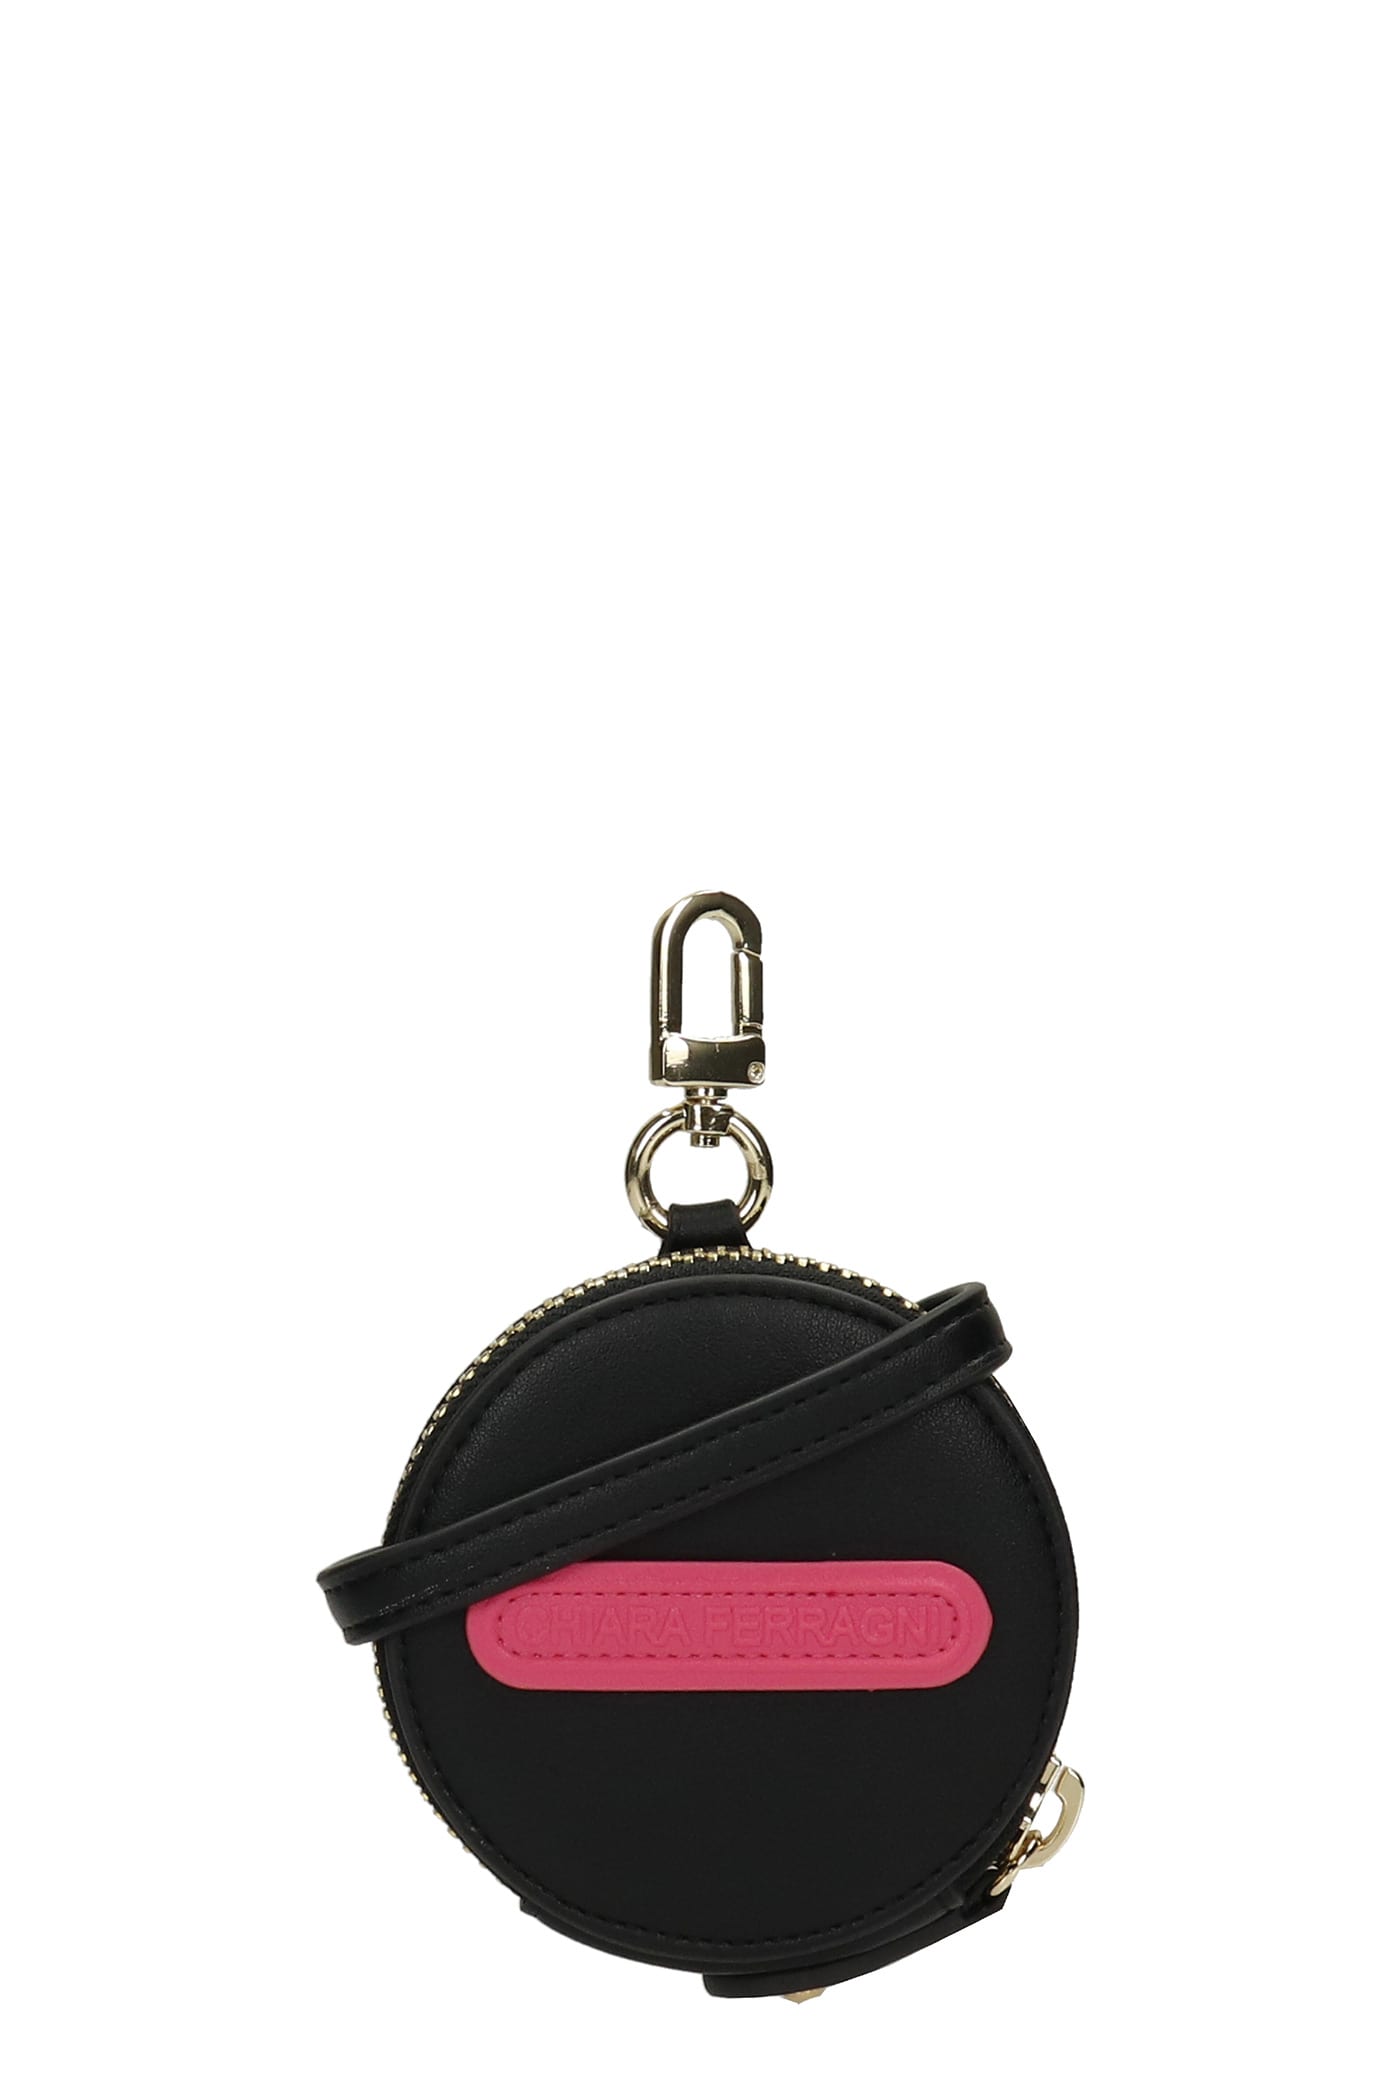 Chiara Ferragni Wallet In Black Faux Leather